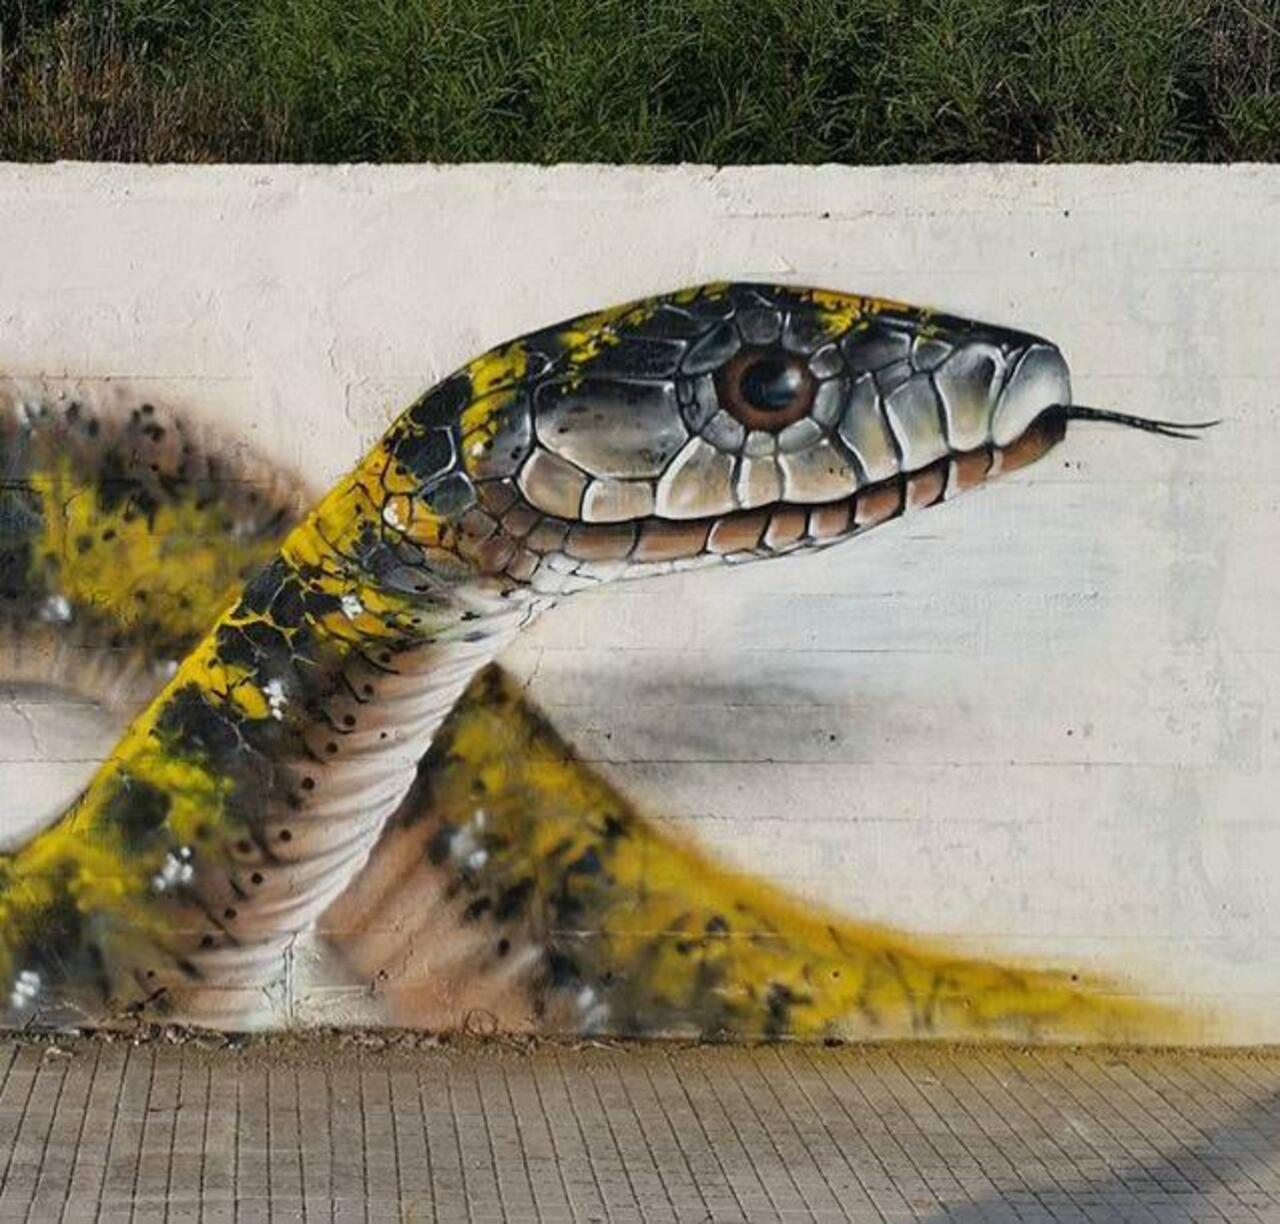 RT belilac "RT belilac "RT belilac "Street Art by Cosimocheone 

#art #graffiti #mural #streetart http://t.co/CcF02EUNeT"""